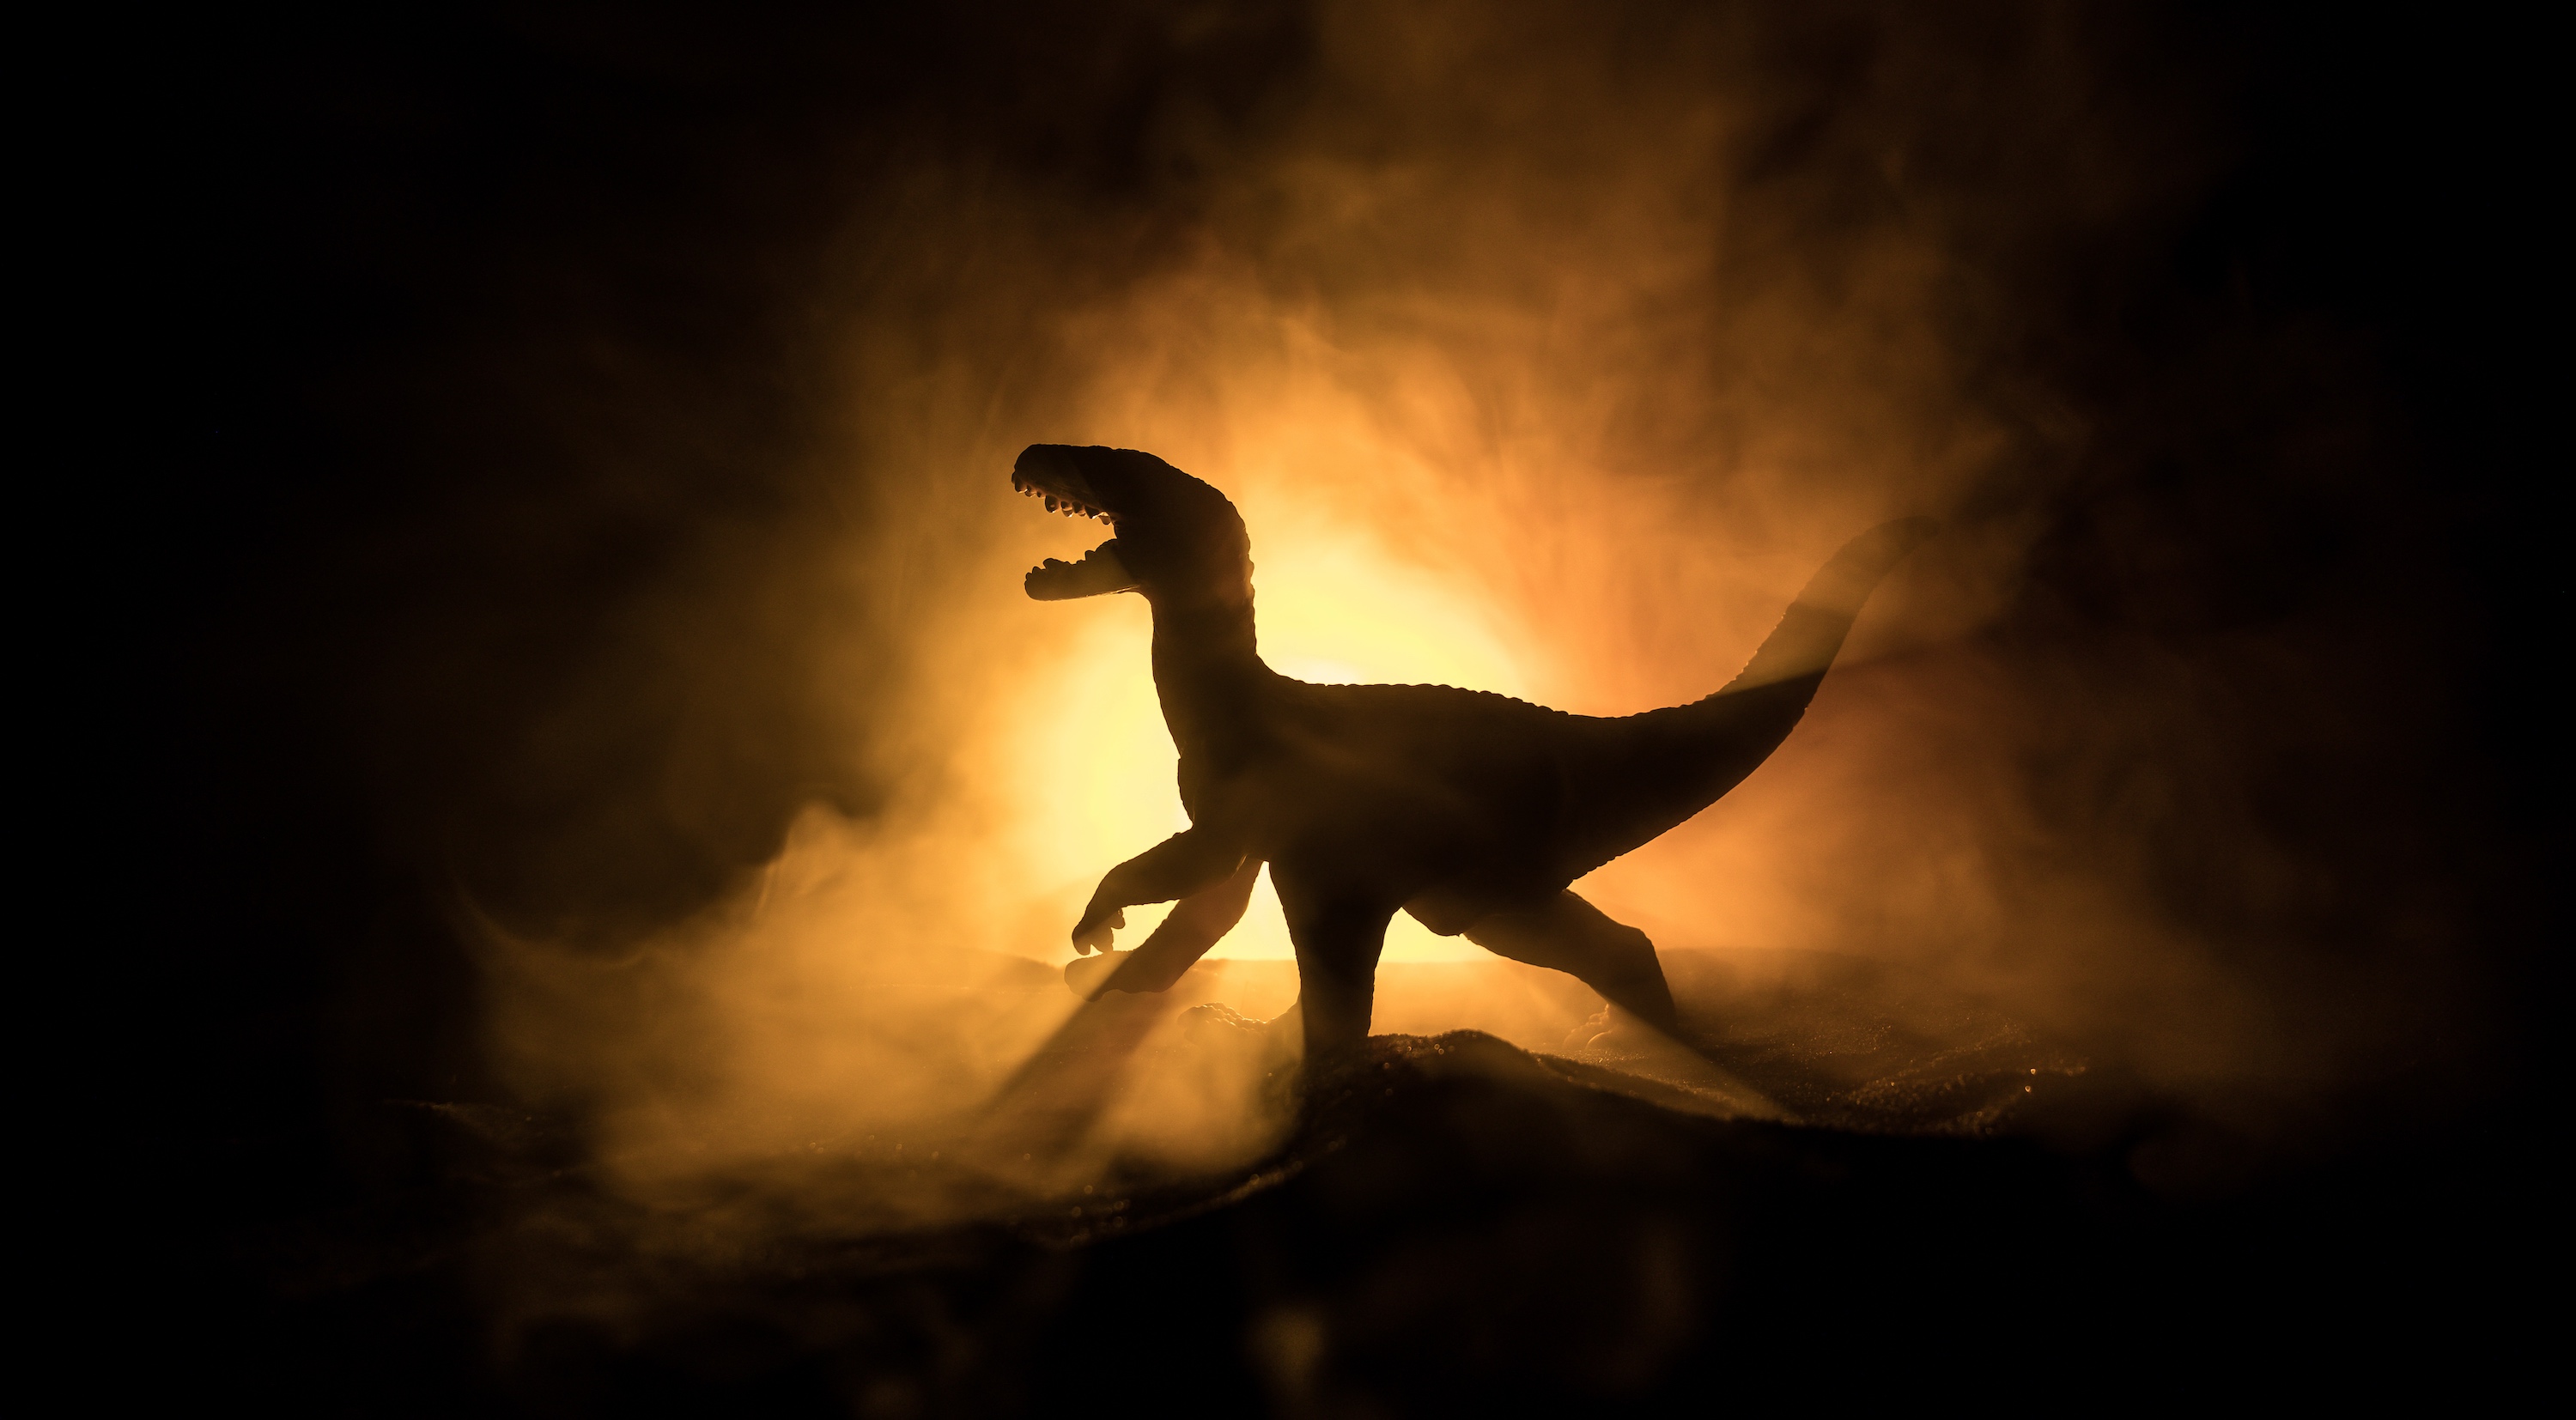 Des chercheurs nous en apprennent un peu plus sur le T-Rex. Il aurait vécu et chassé en meute et se serait déplacé plus lentement que ne le pensaient les paléontologues par le passé. © zef art, Adobe Stock